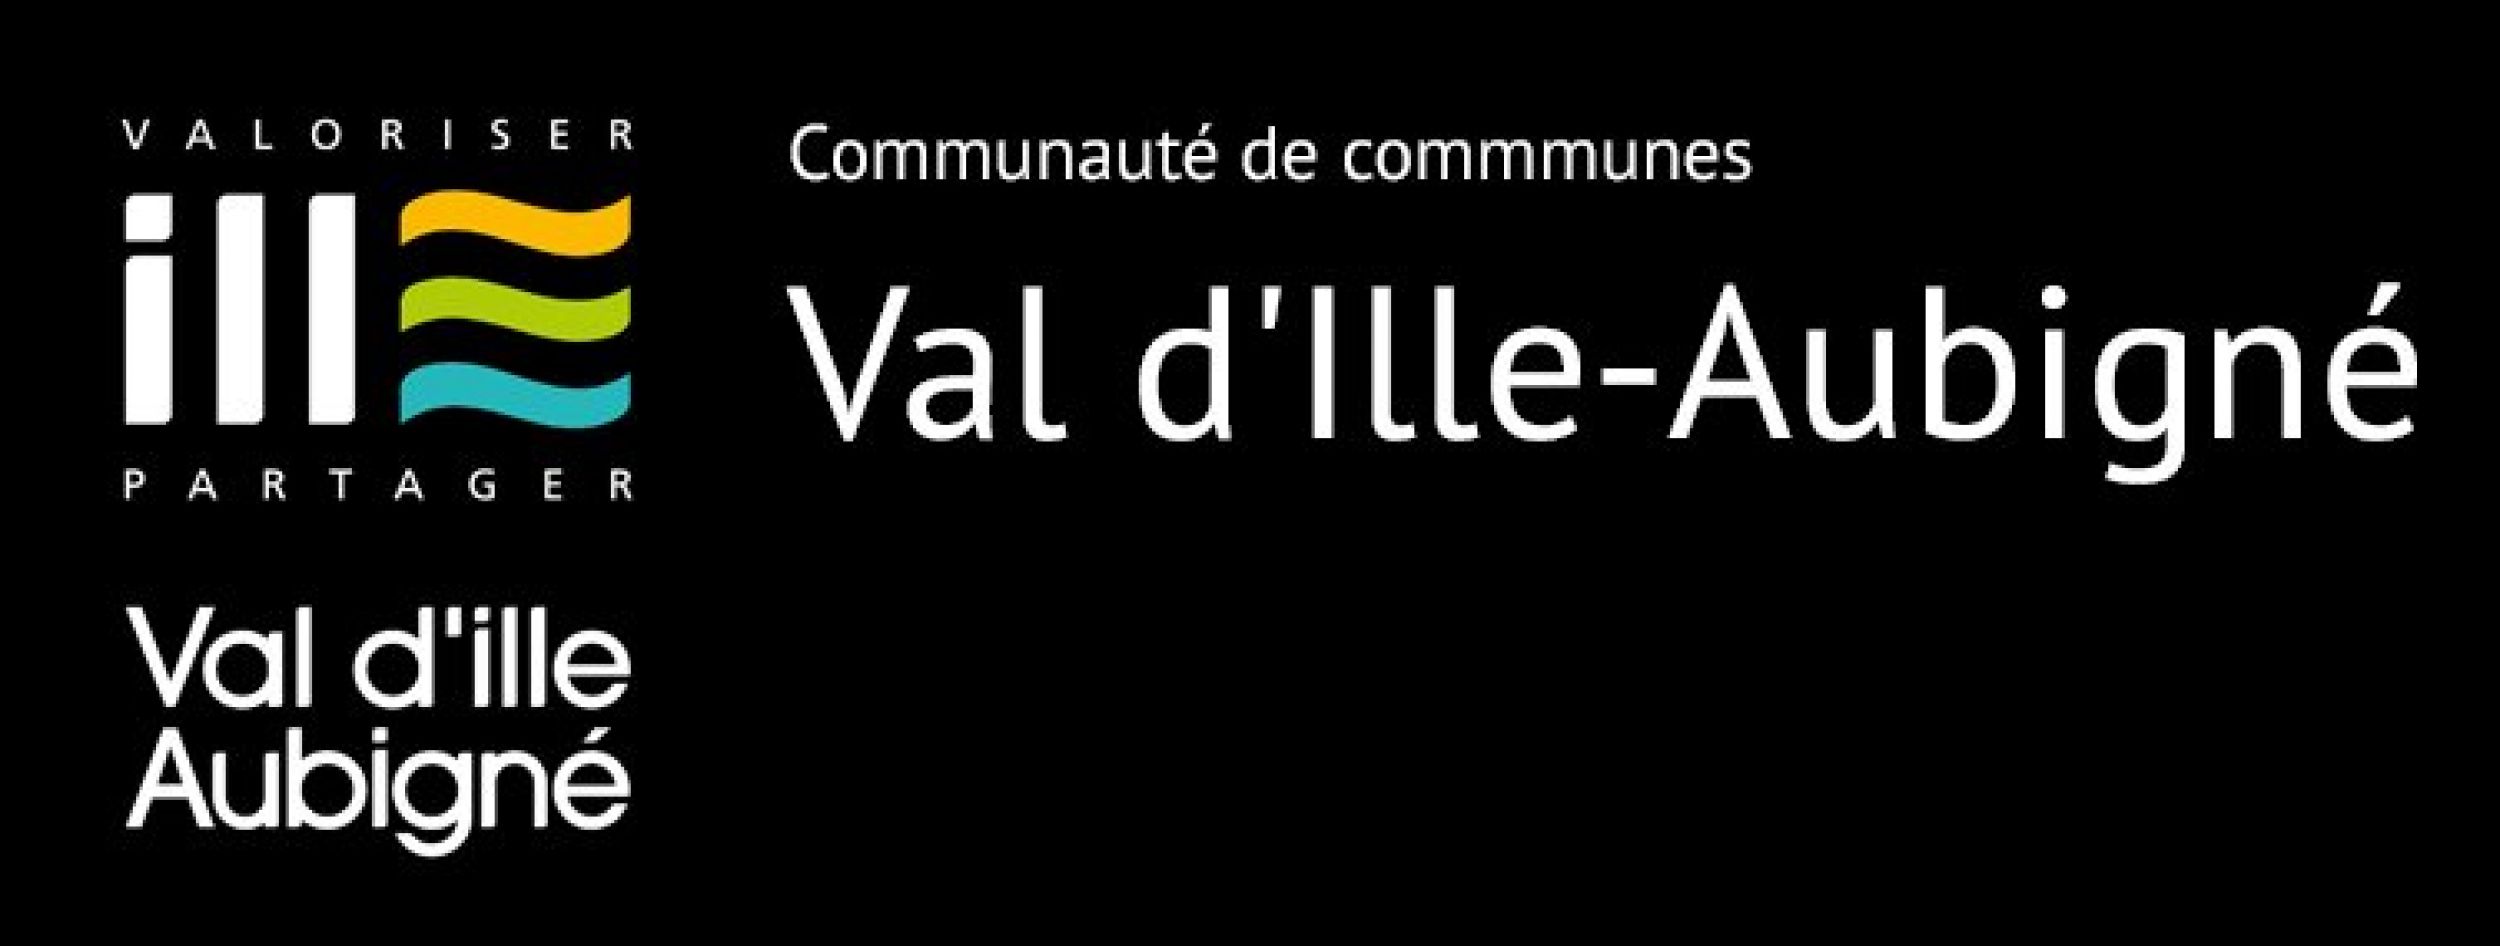 Communauté de Communes Val d’Ille-Aubigné